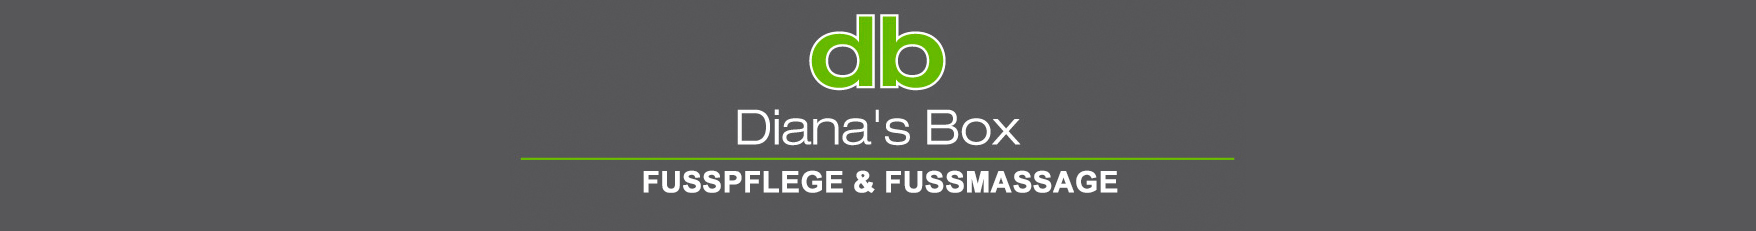 Diana's Box 